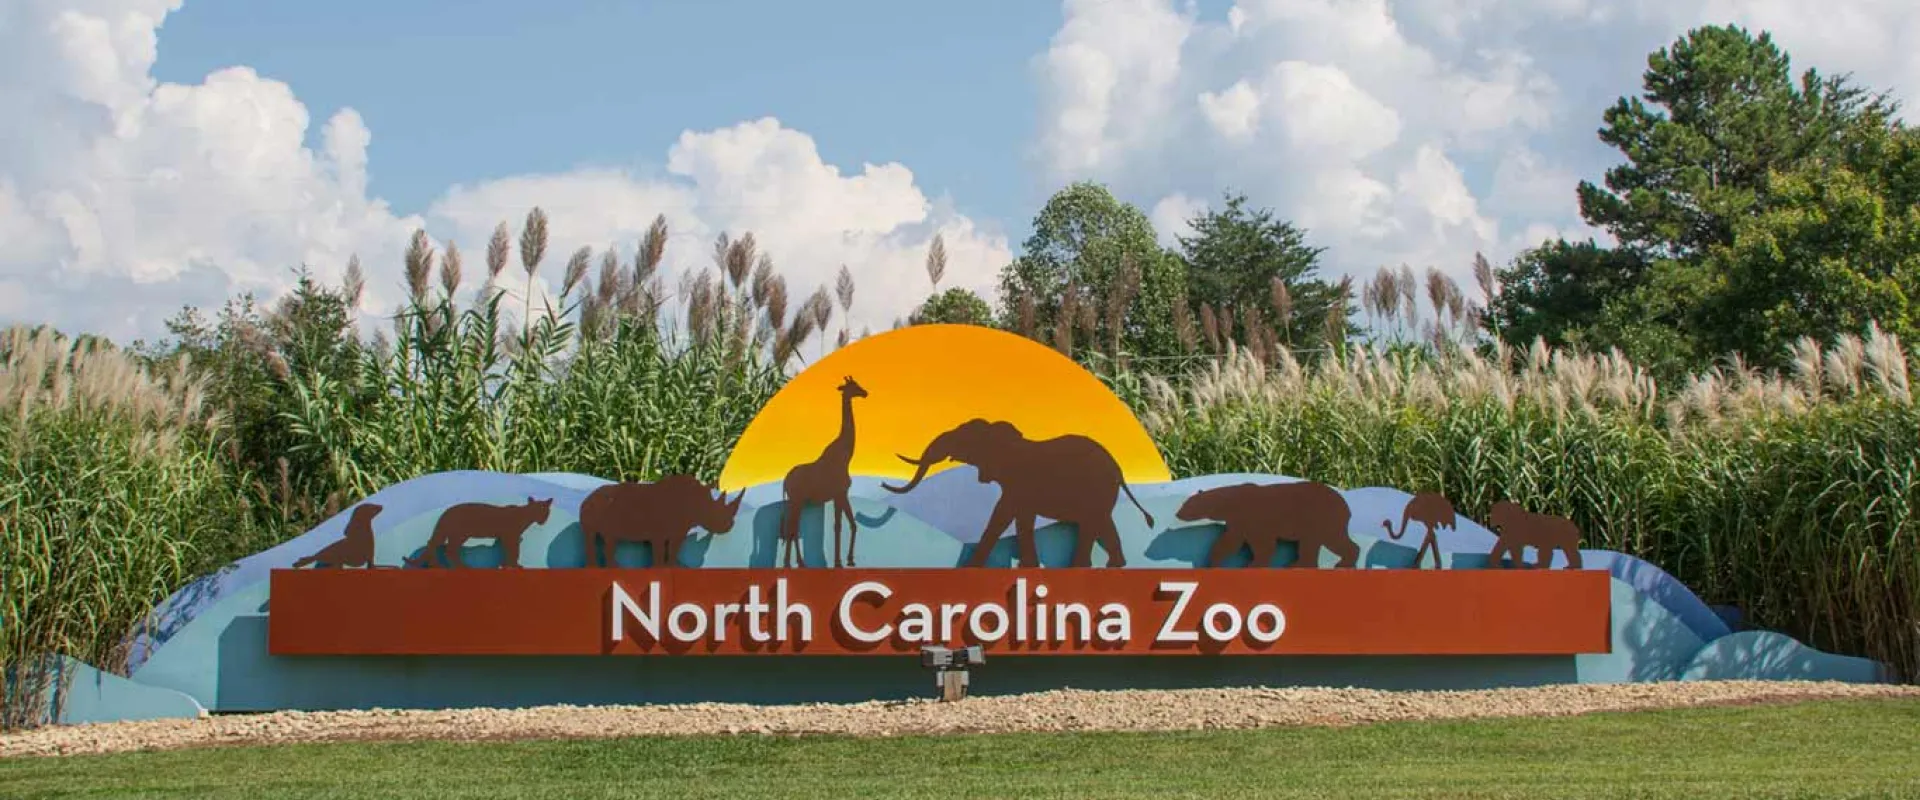 North Carolina Zoo Announces Record Attendance for 2019